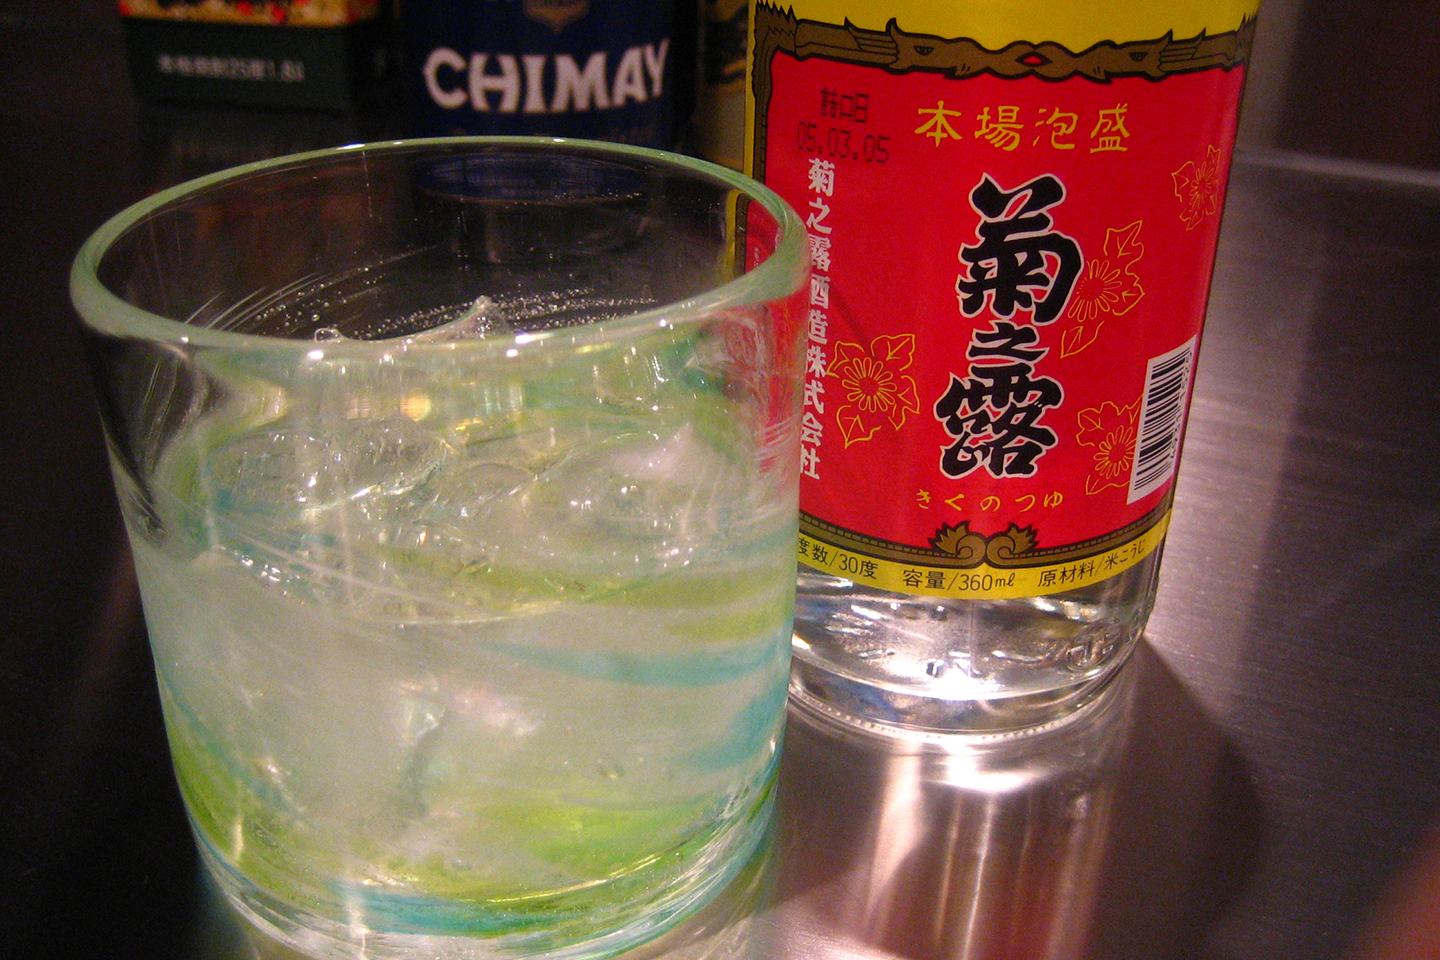 20 bebidas típicas de Japón que debes probar